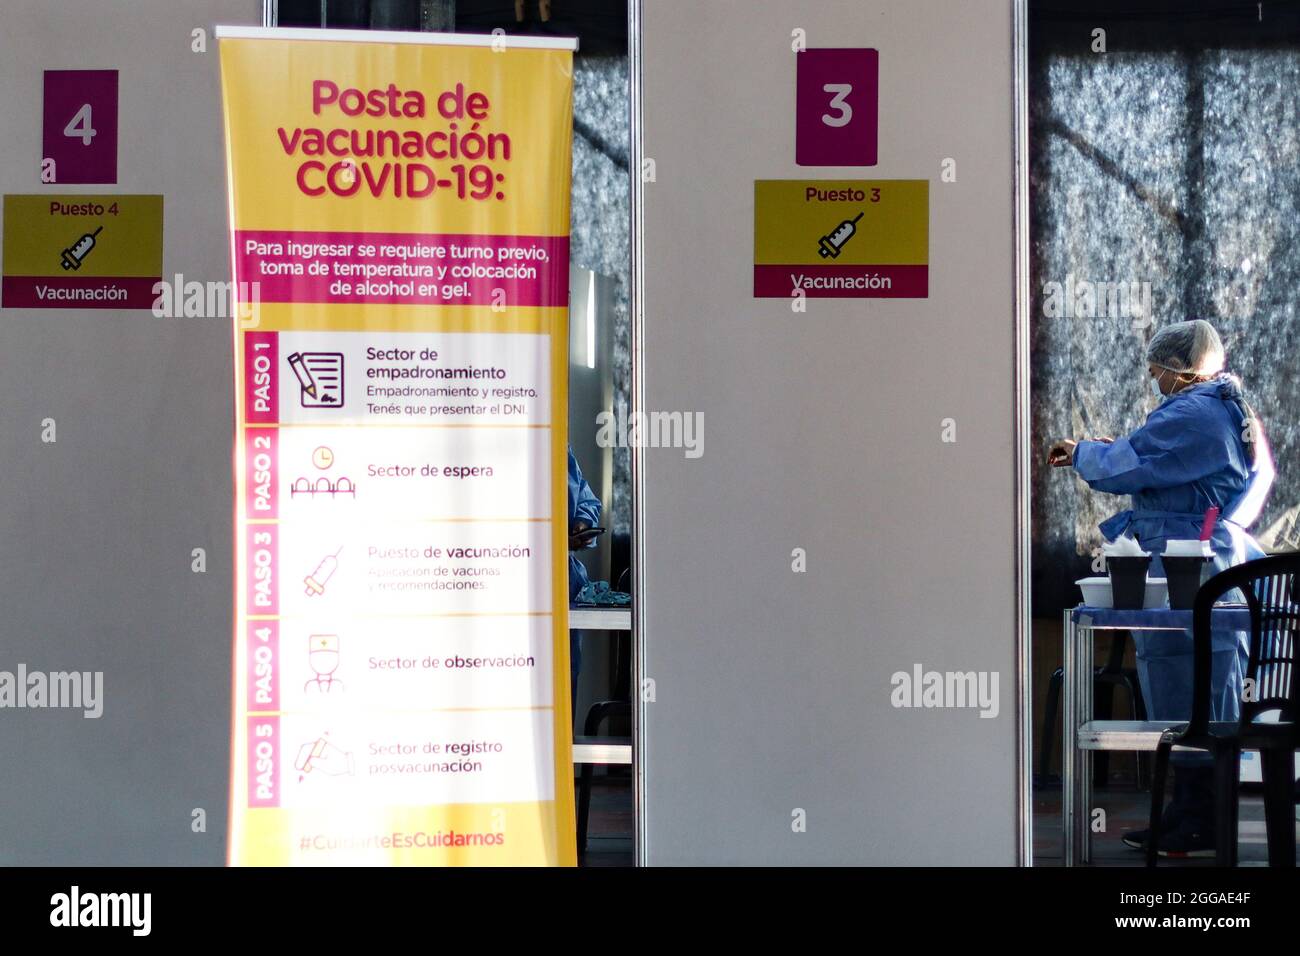 BUENOS AIRES, 30.08.2021: Un puesto de vacunación recibe adultos para aplicar la segunda dosis de la vacuna Sputnik V contra Covid-19. Foto de stock